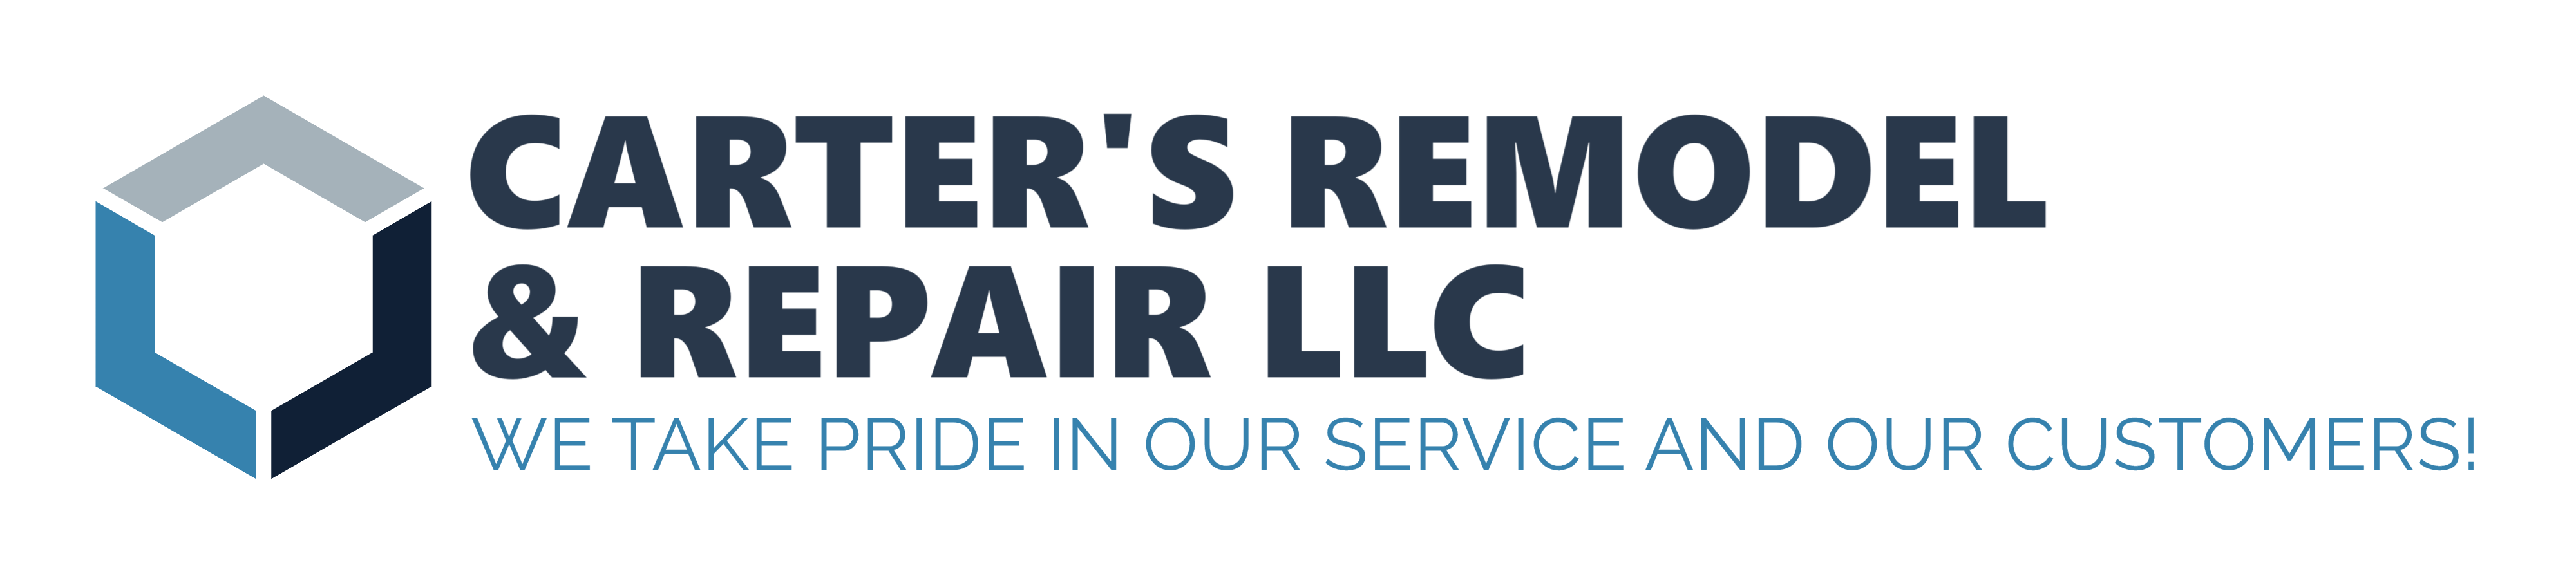 Carter's Remodel & Repair  LLC